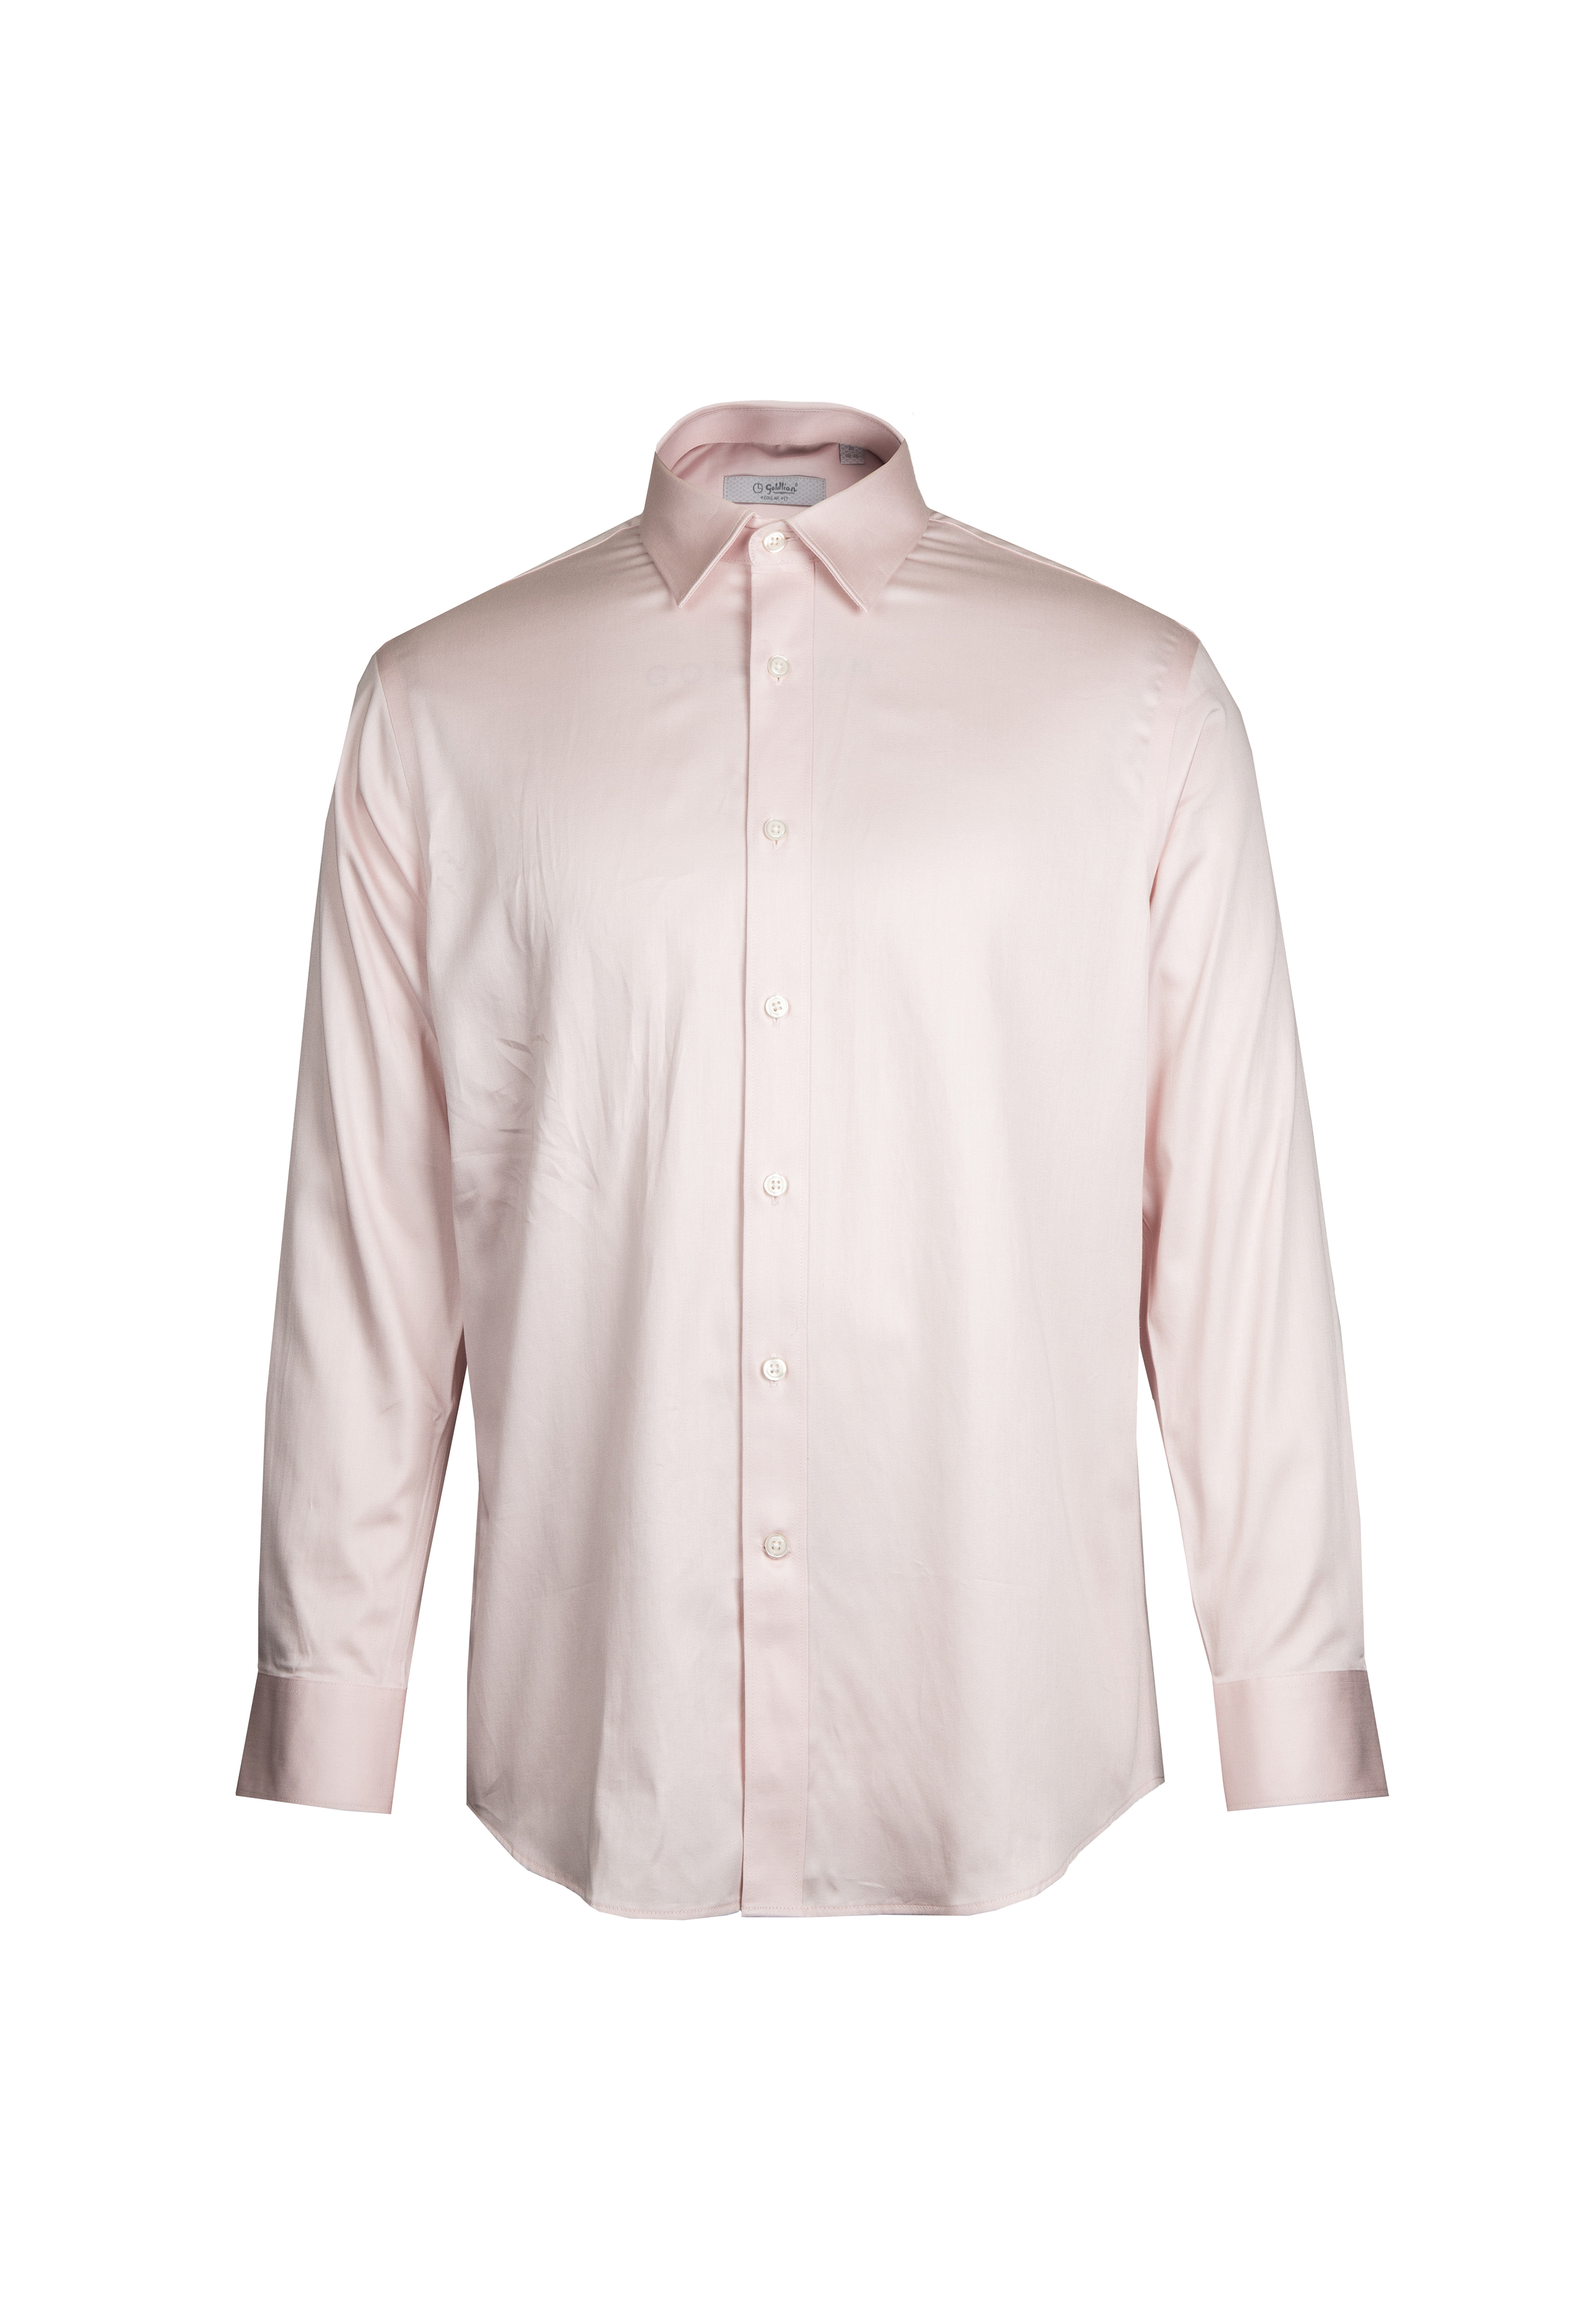 [Online Exclusive] Goldlion Business Regular Fit Long-Sleeved Shirt (Light Pink)